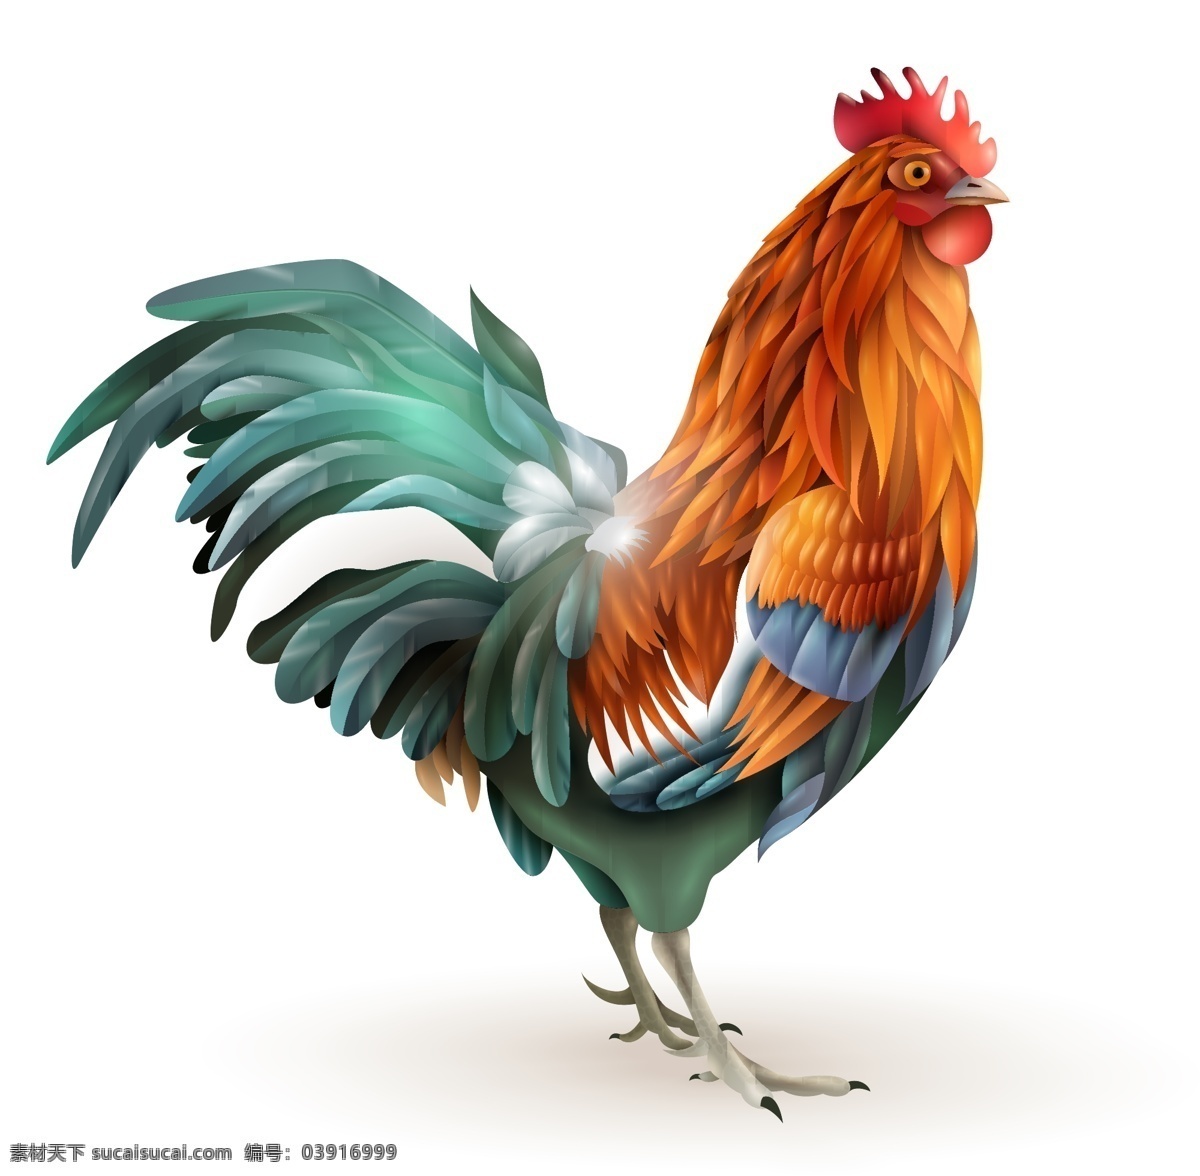 公鸡矢量素材 公鸡矢量 公鸡素材 公鸡 鸡 家禽 共享设计矢量 生物世界 家禽家畜